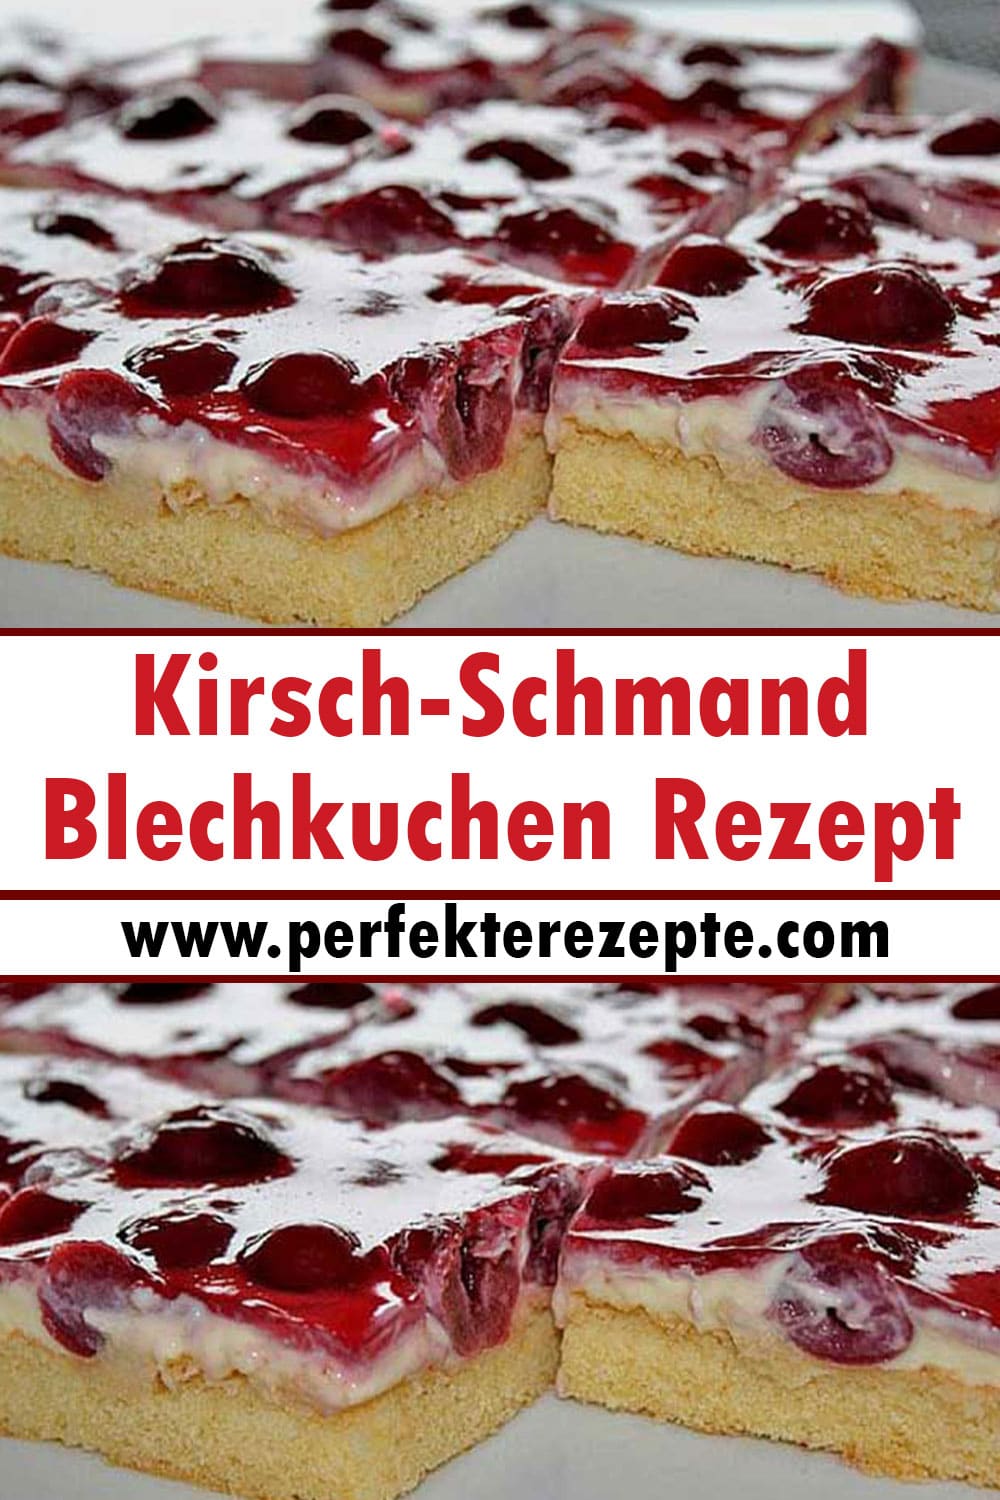 Kirsch-Schmand-Blechkuchen Rezept